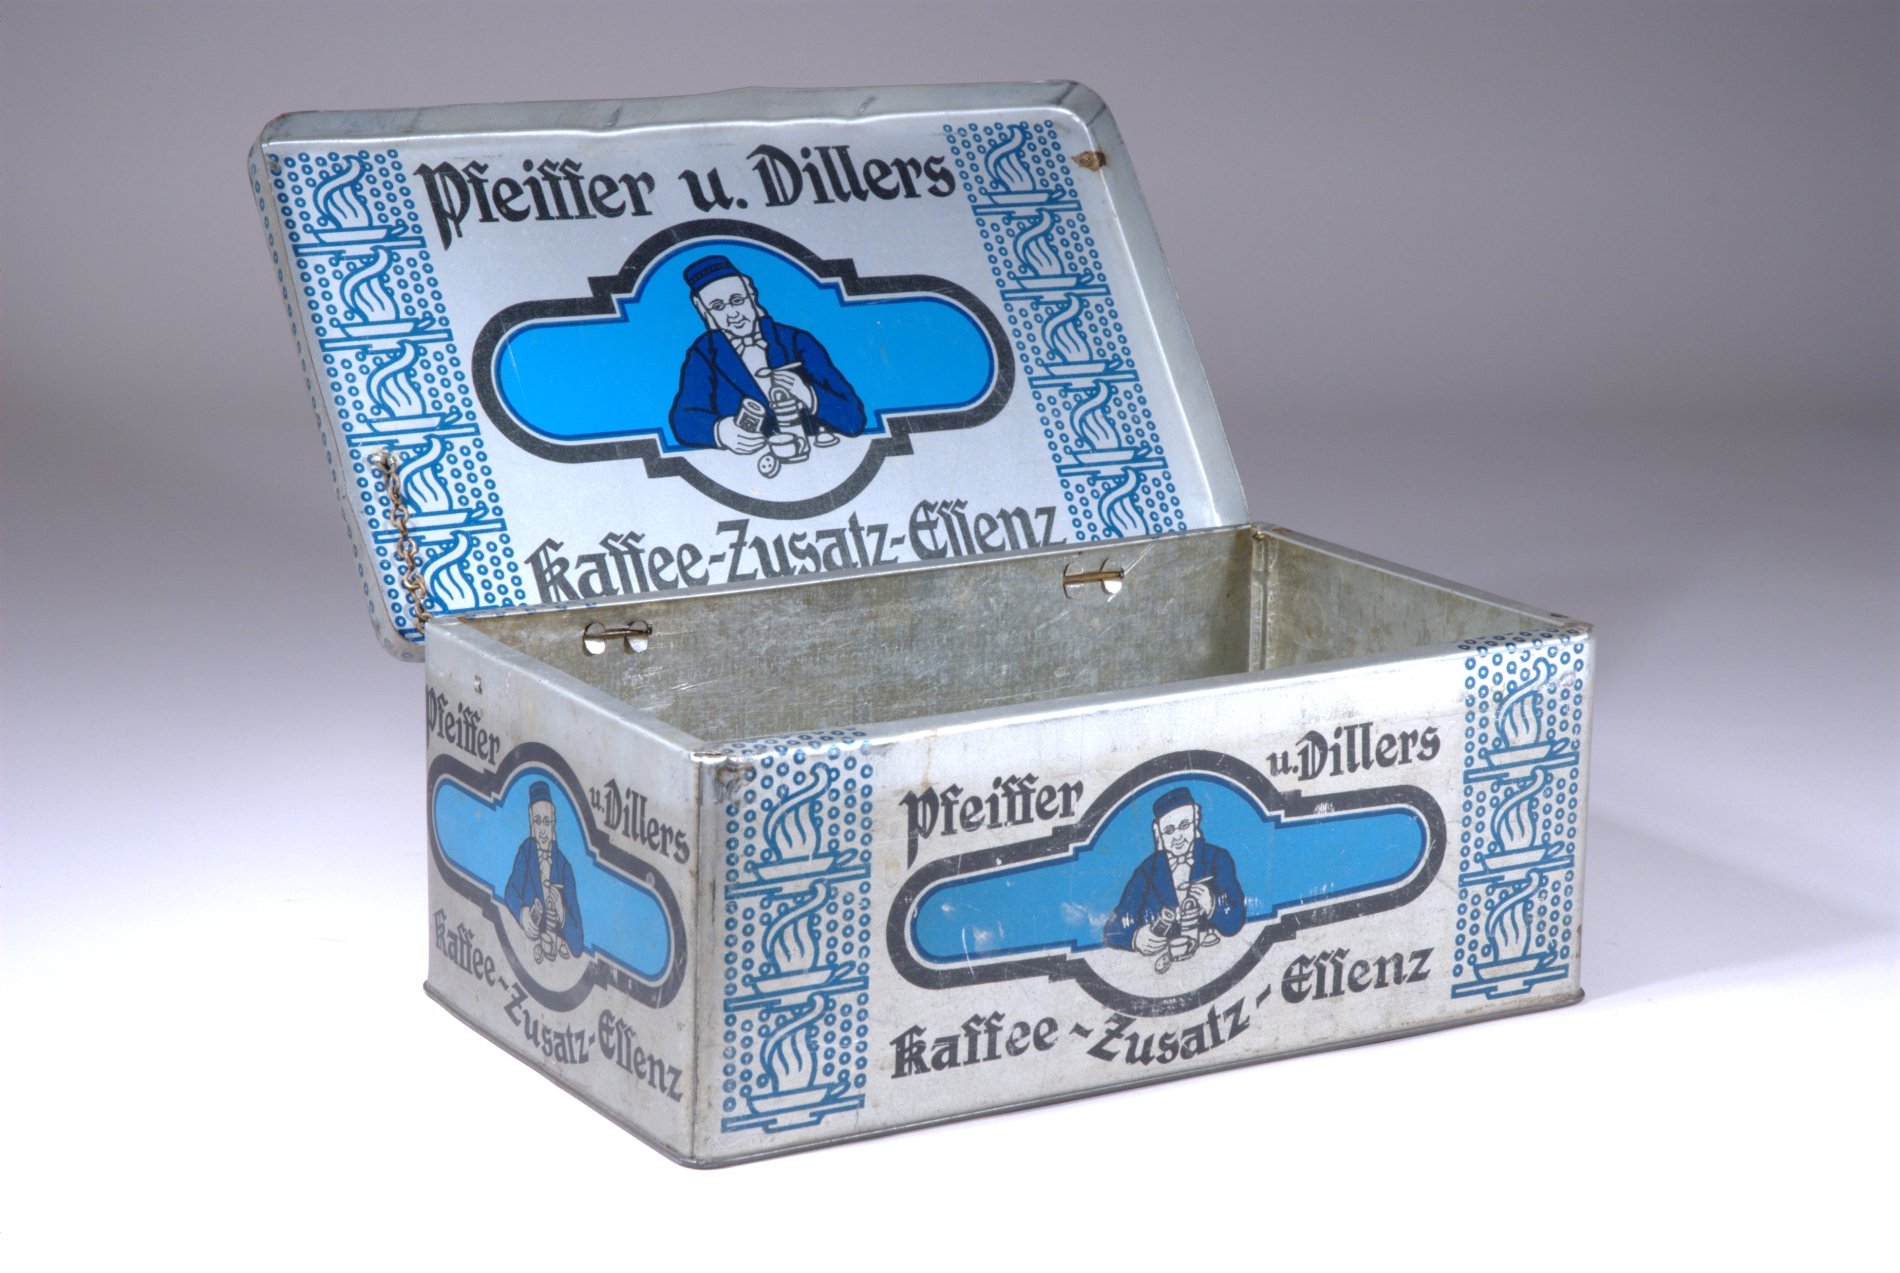 Kiste für "Pfeiffer u. Dillers Kaffee-Zusatz-Essenz" (Stiftung Domäne Dahlem - Landgut und Museum, Weiternutzung nur mit Genehmigung des Museums CC BY-NC-SA)